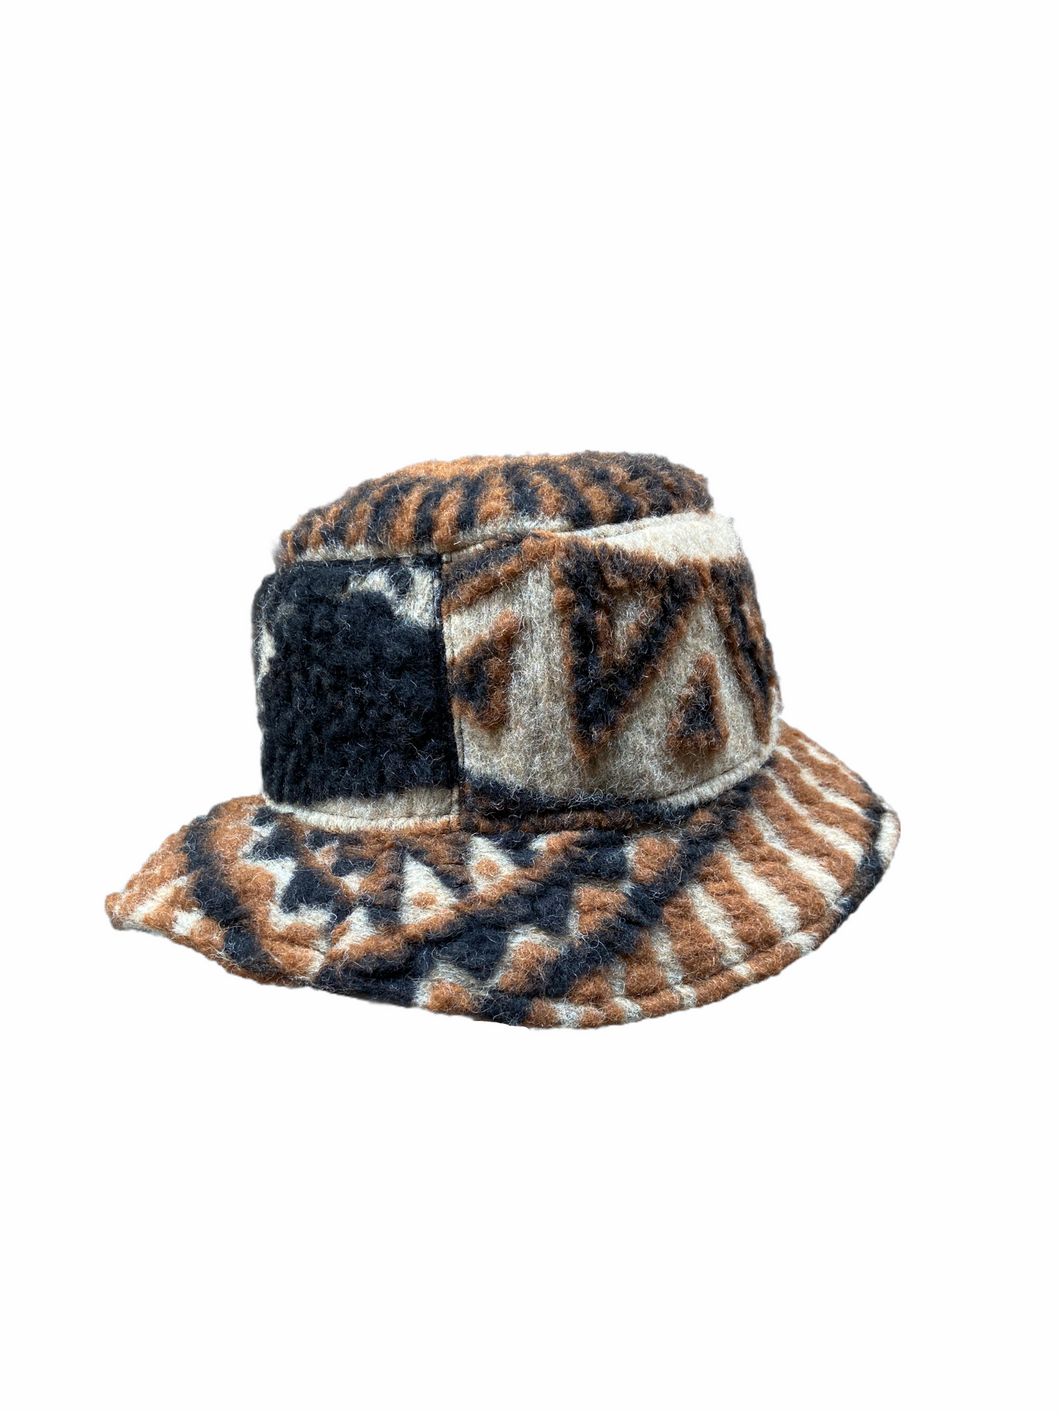 Bucket Hat (Aztec Mystic Version)